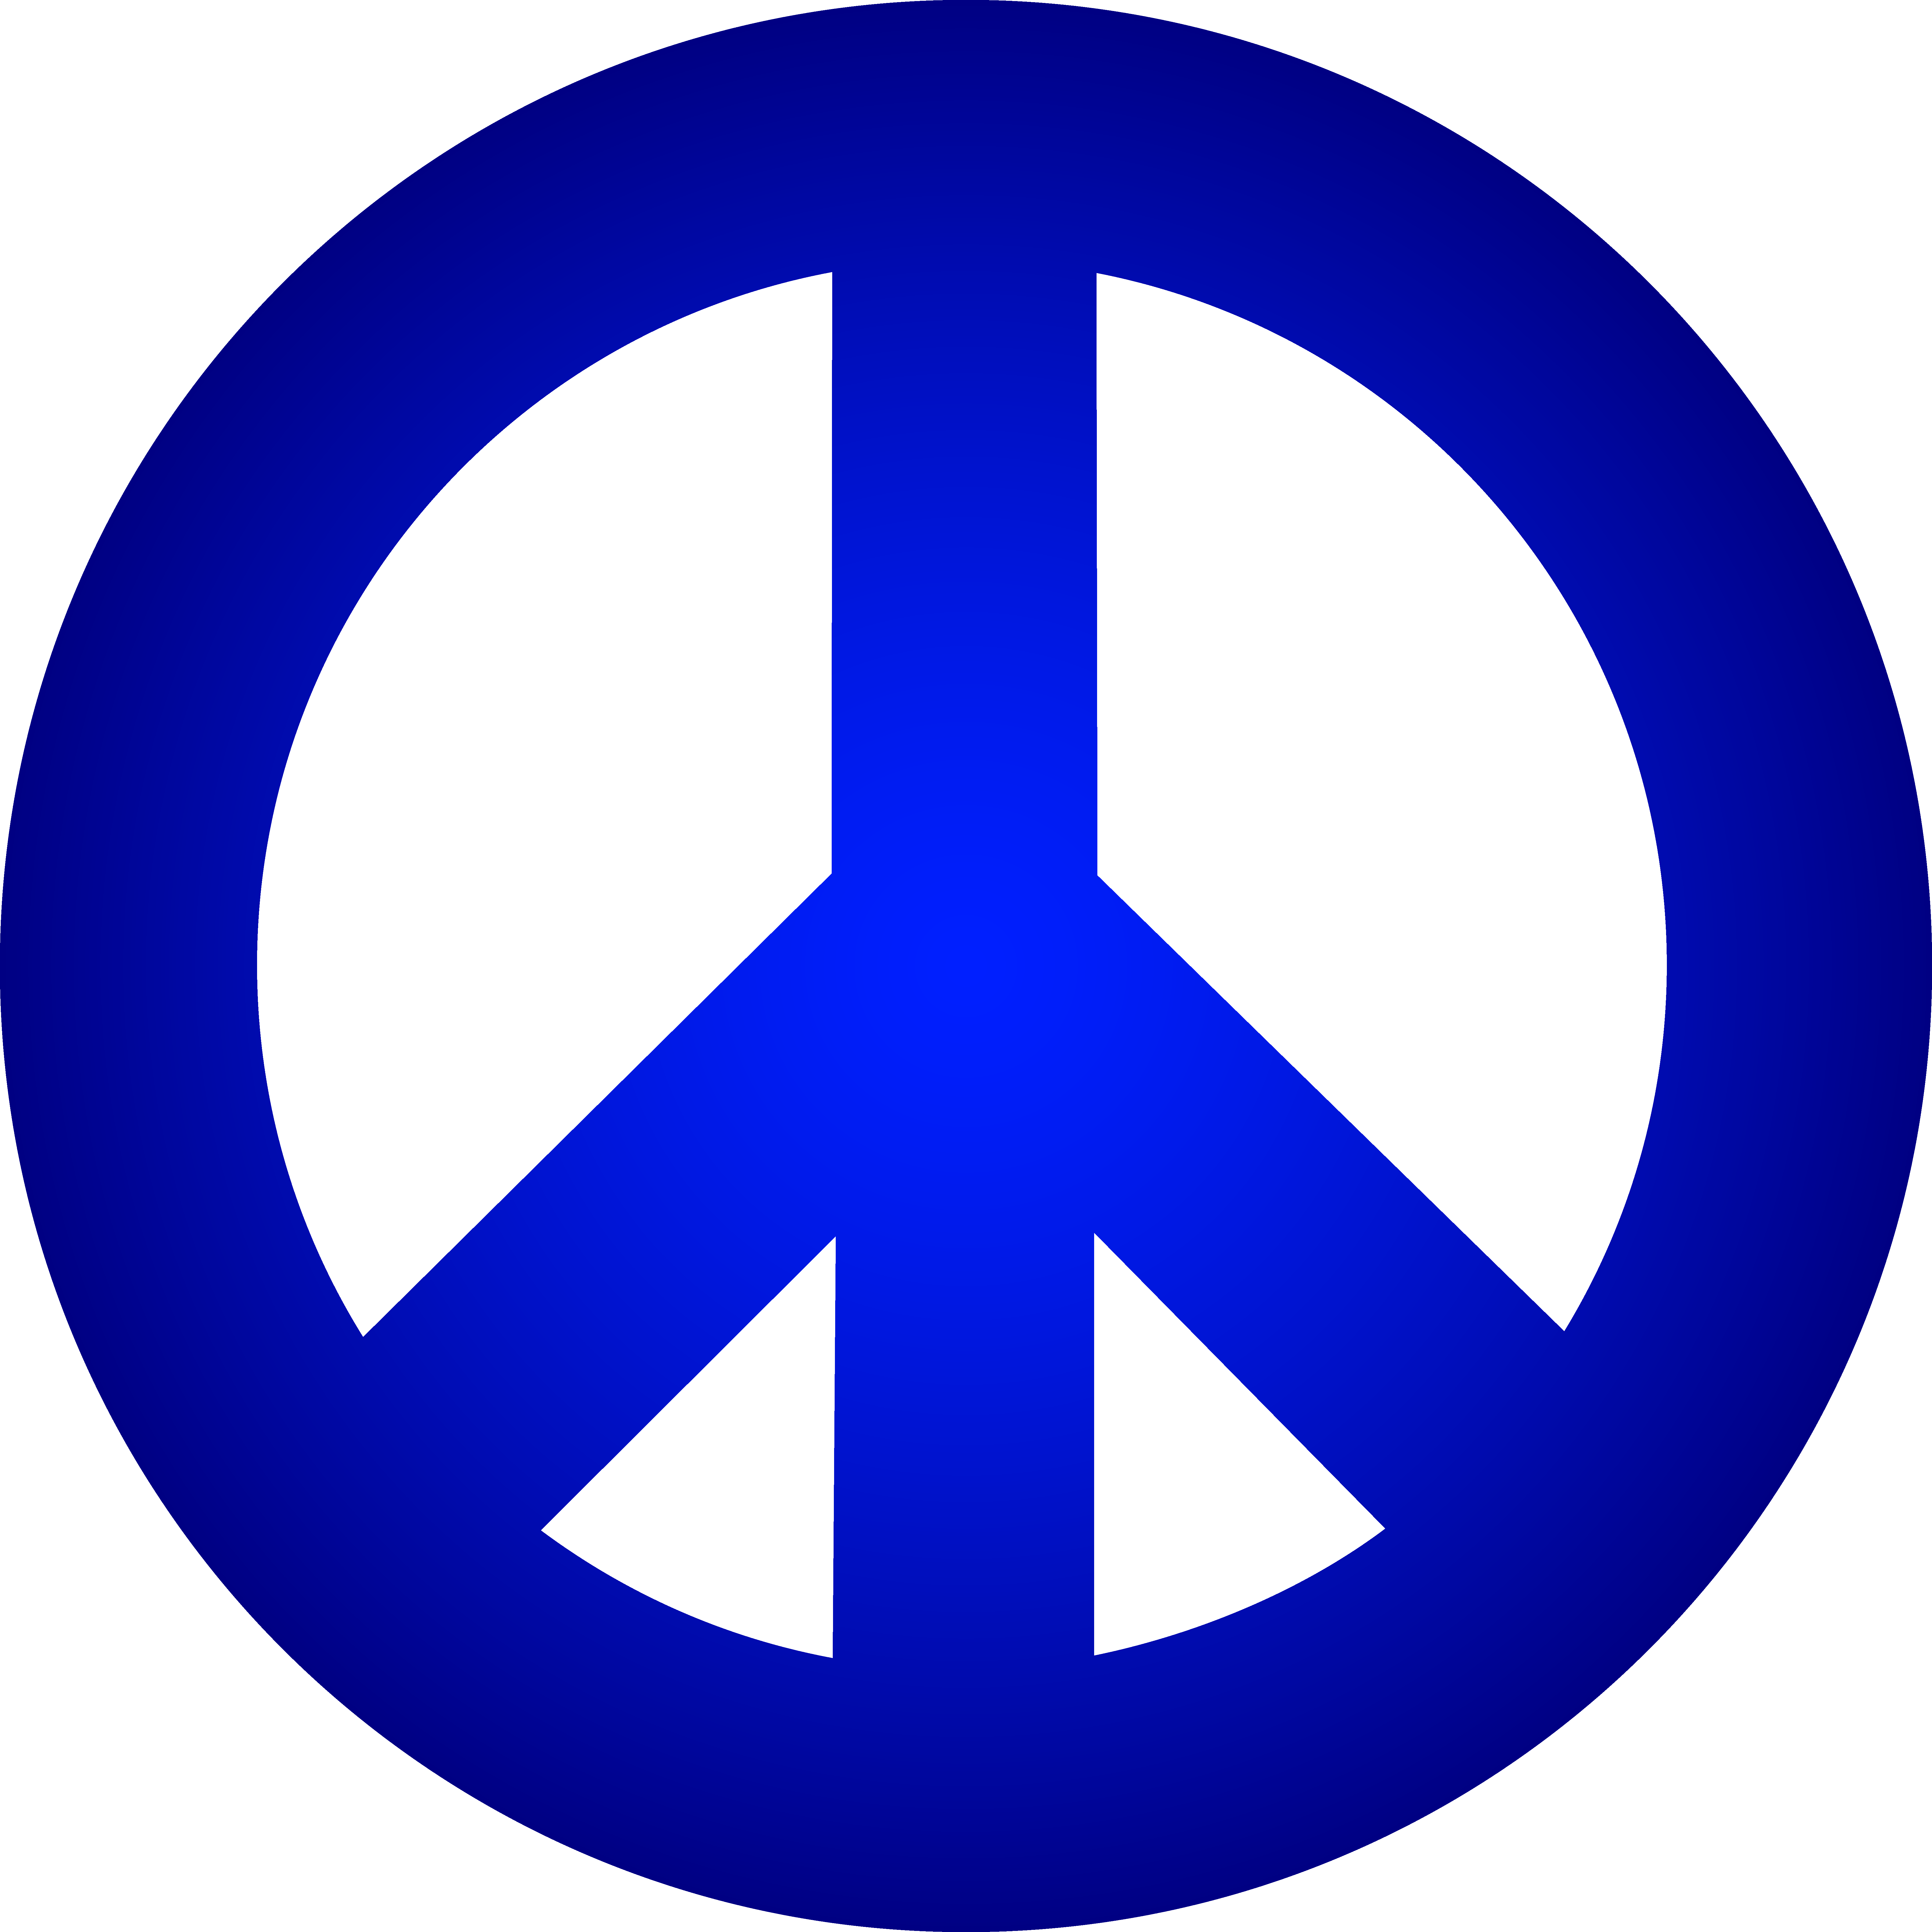 Image PNG sans symbole de paix